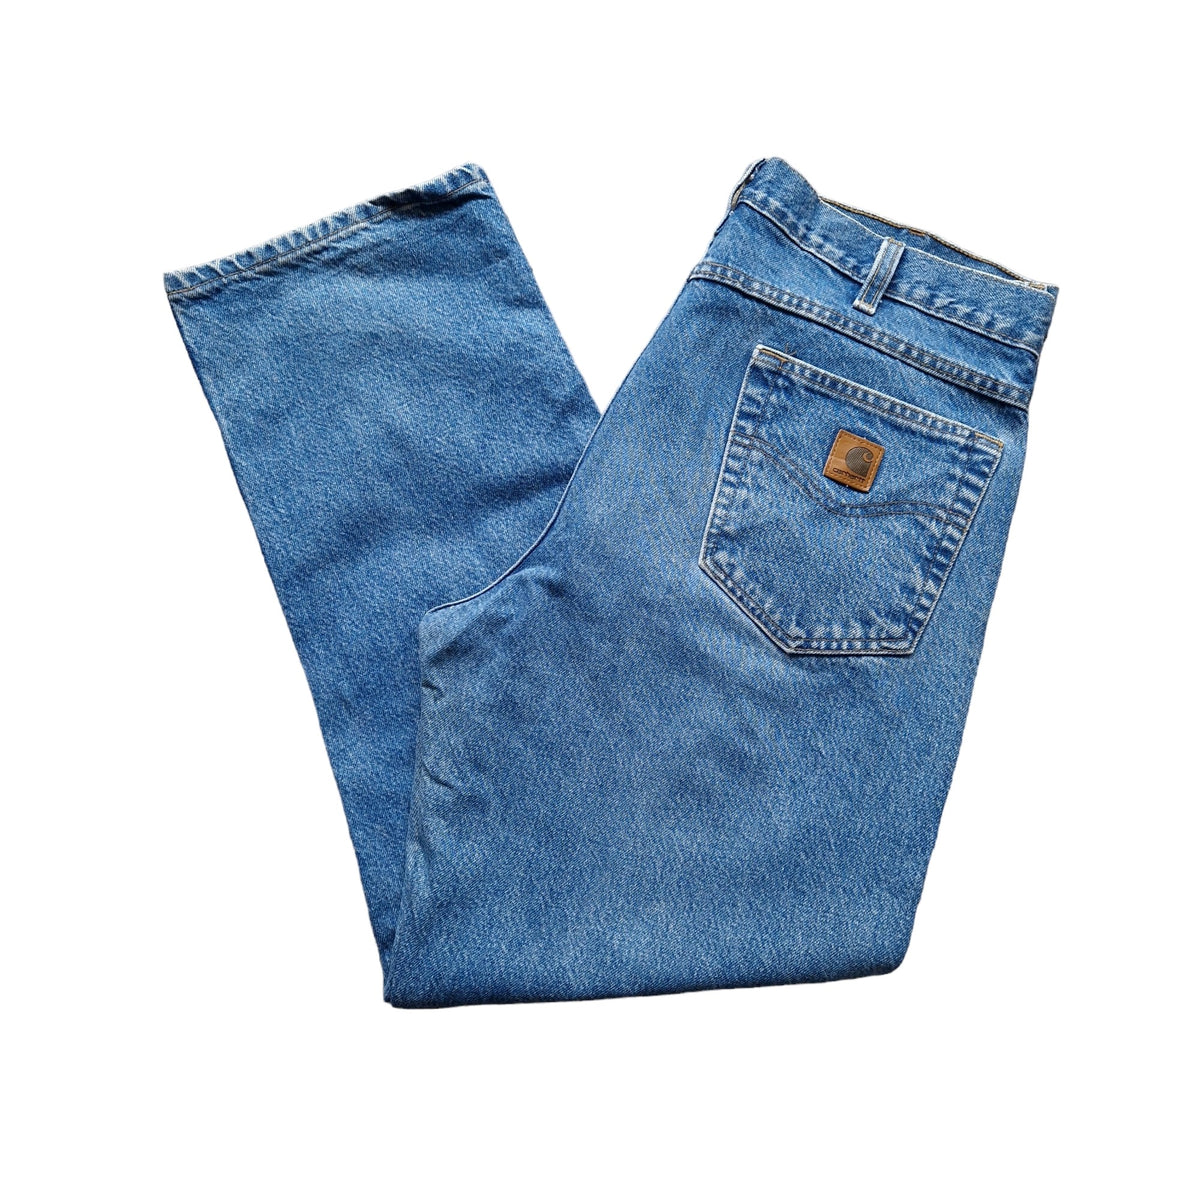 Carhartt Denim Jeans - Size W37 L30